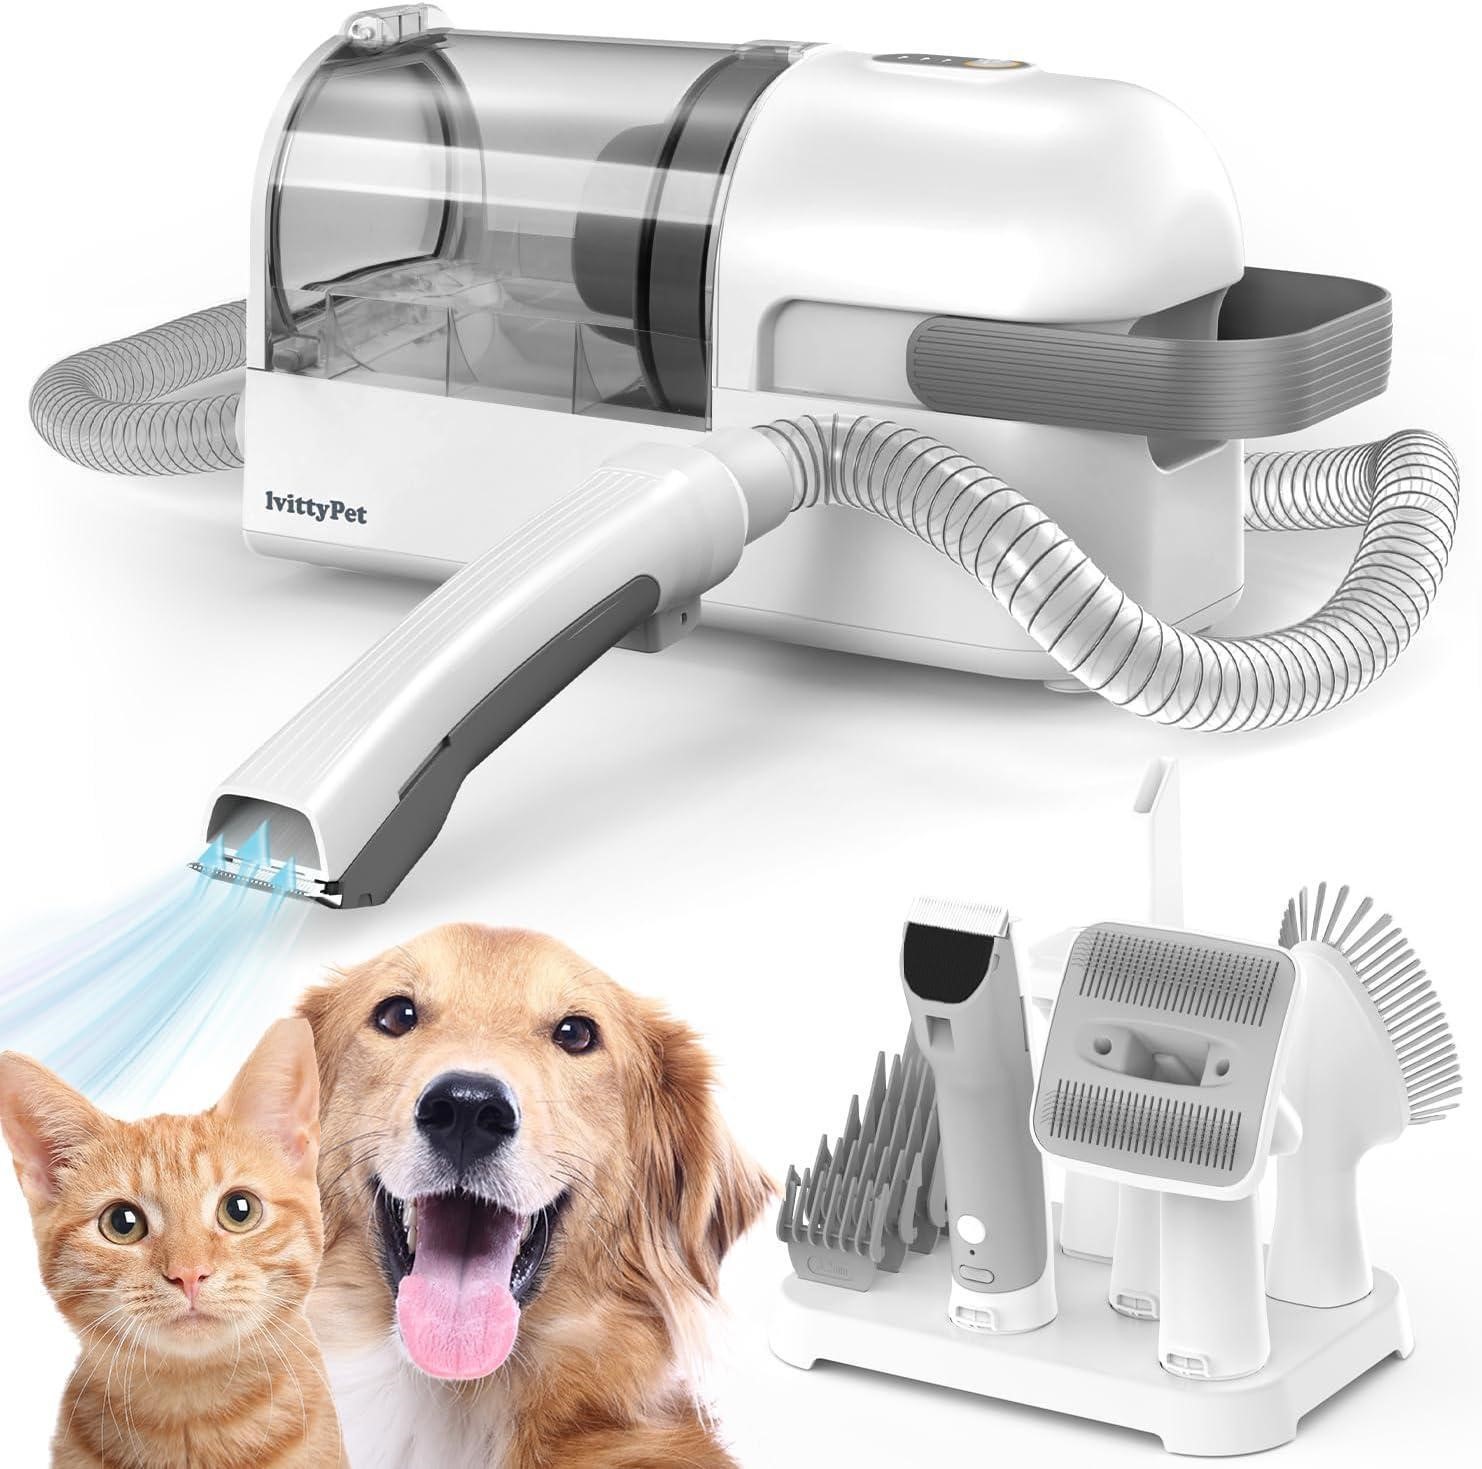 ULN - lvittyPet Dog Grooming & Hair Vacuum